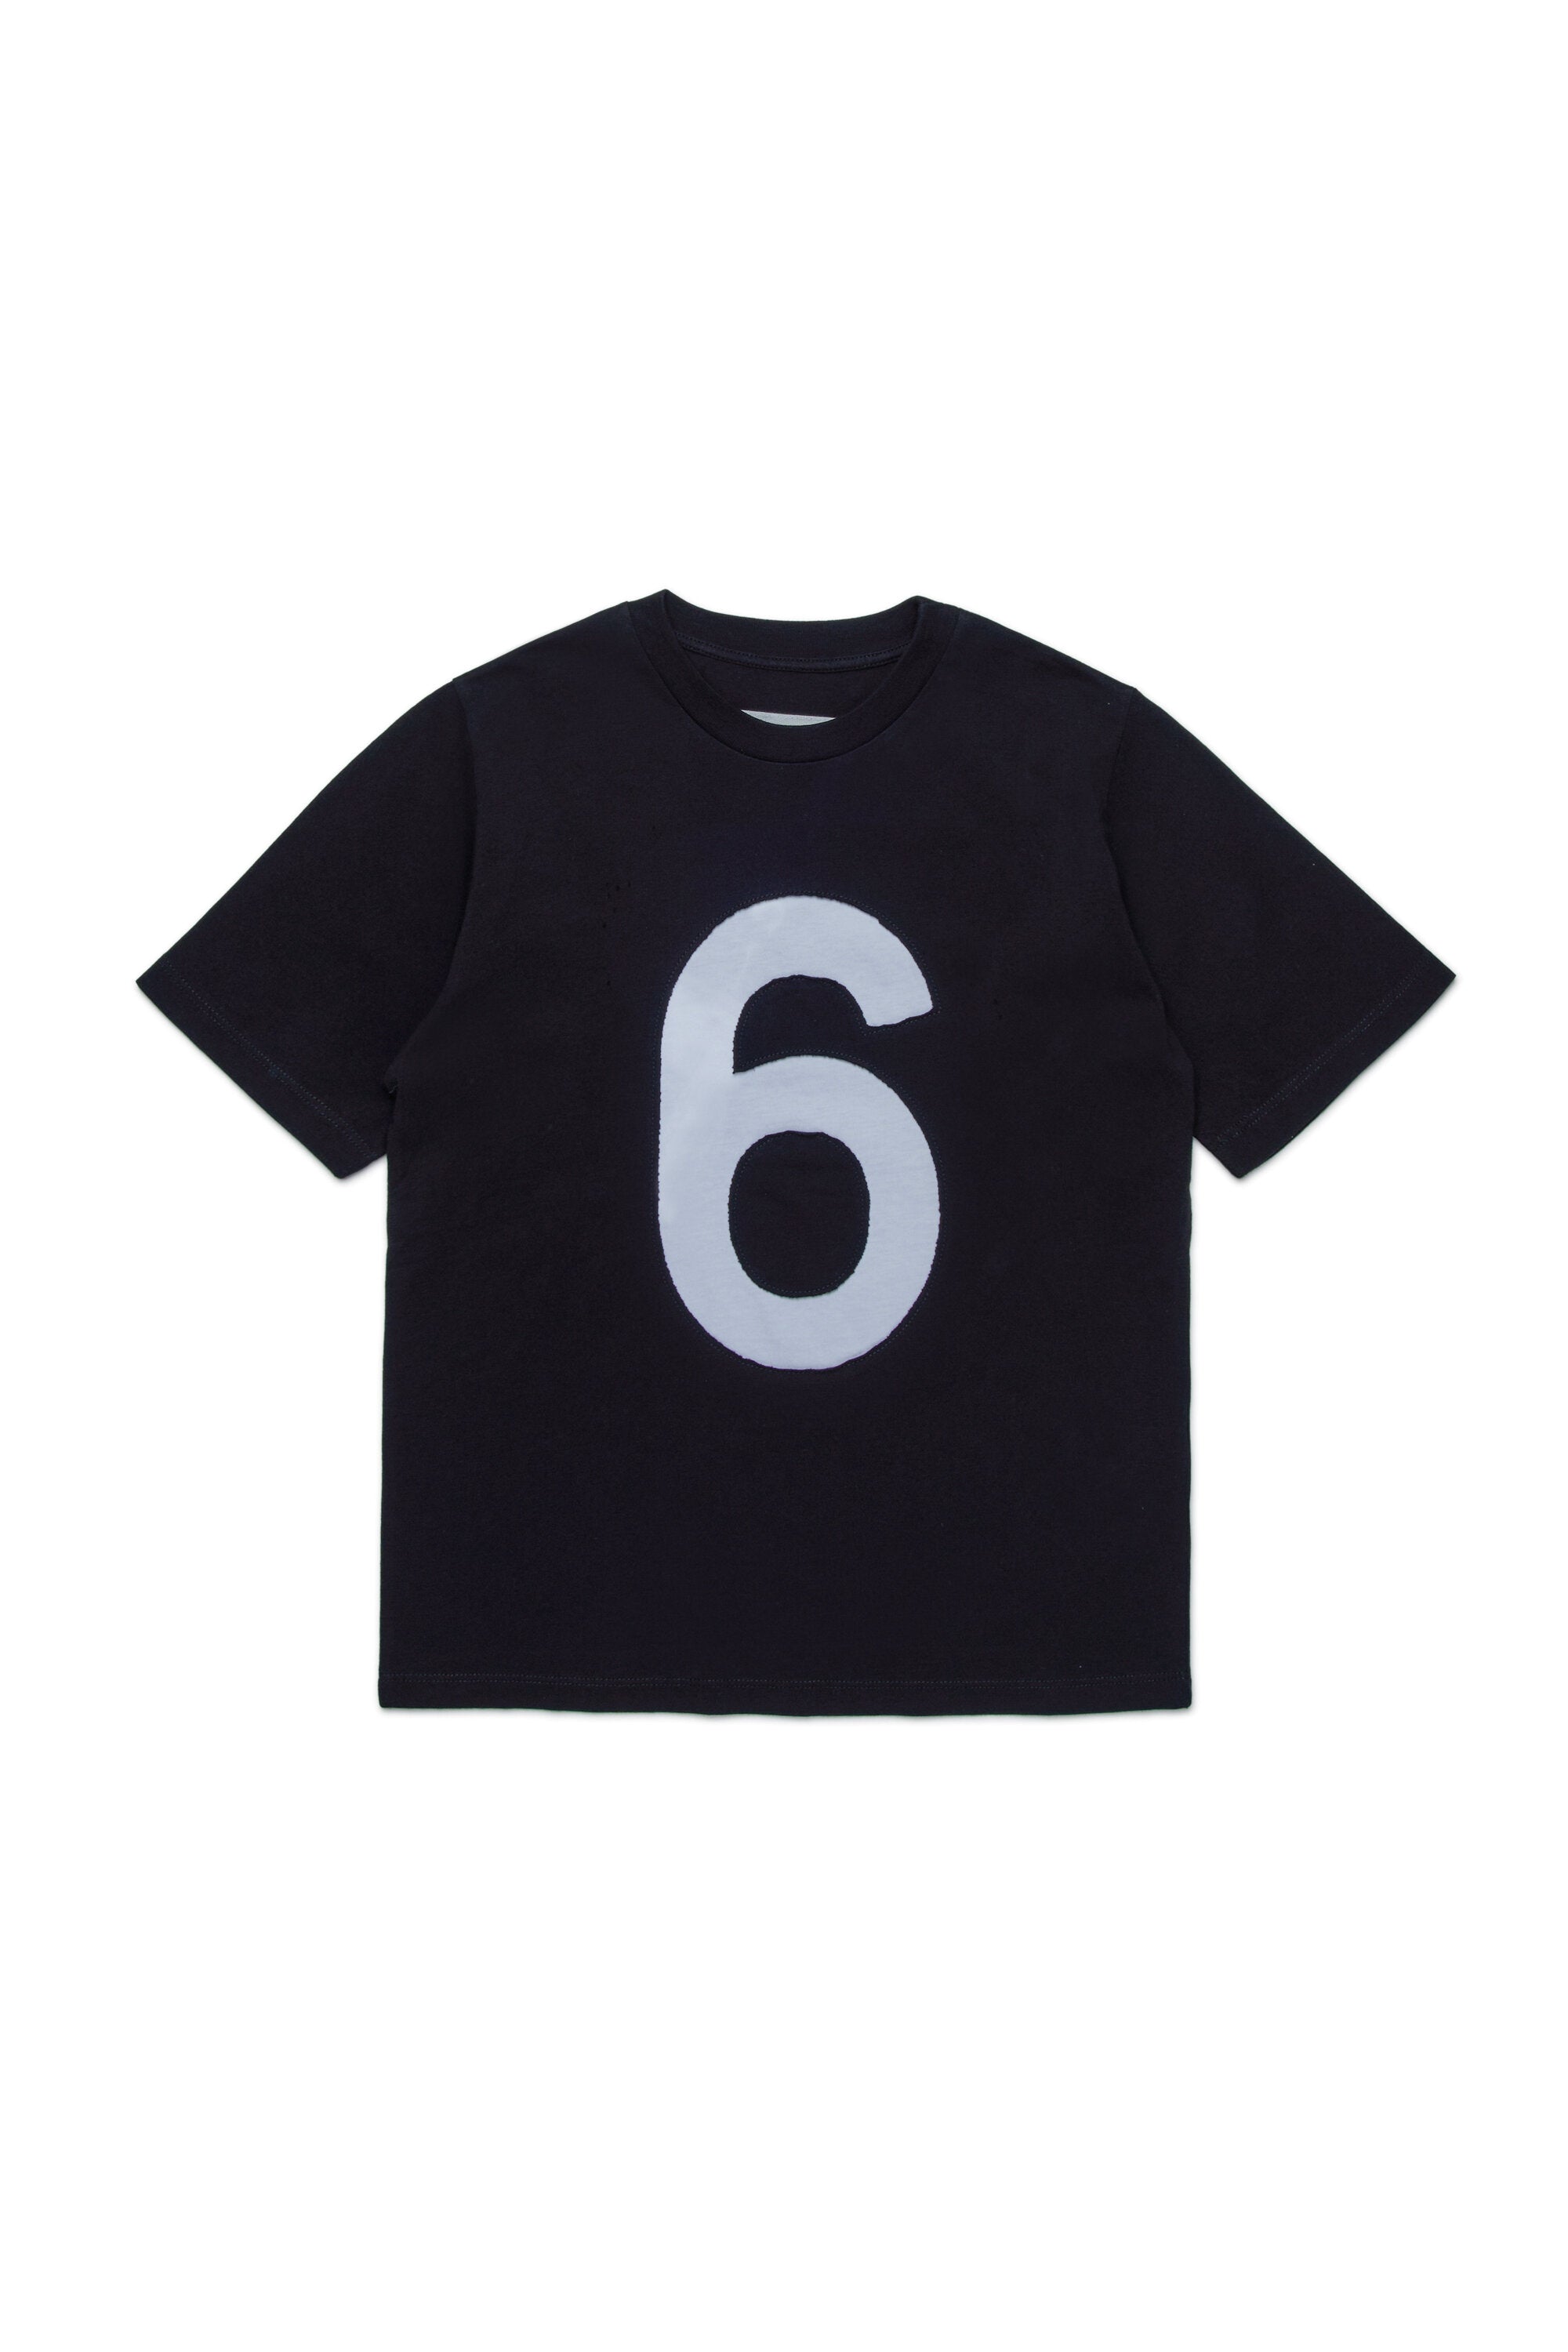 インレー6」ロゴTシャツ